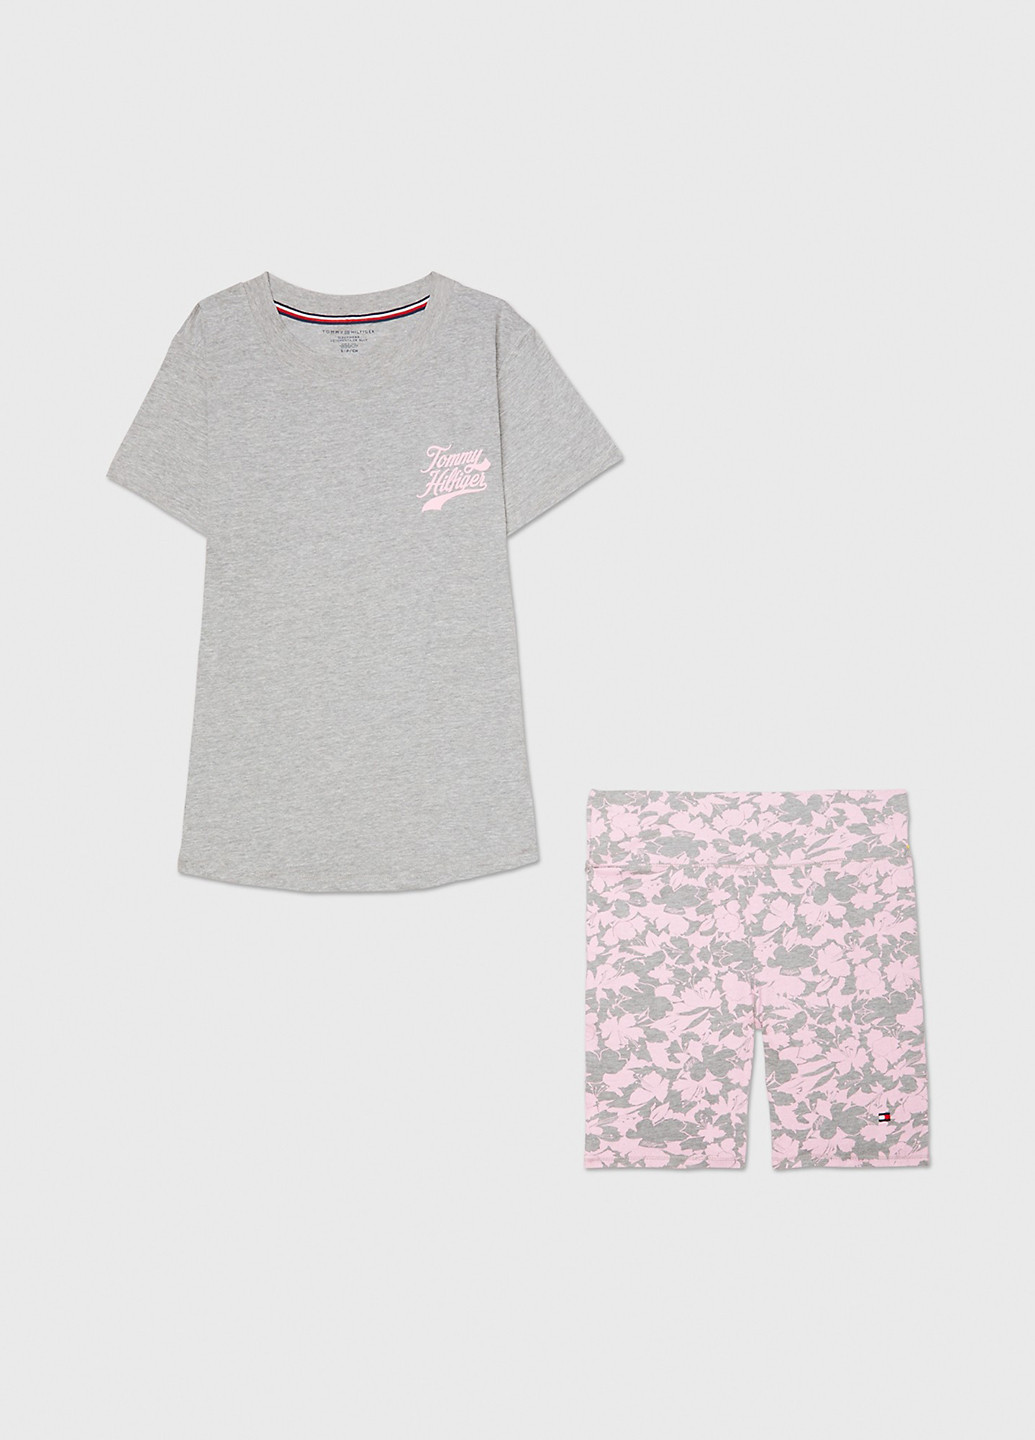 Комбинированная всесезон пижама (футболка, шорты) футболка + шорты Tommy Hilfiger